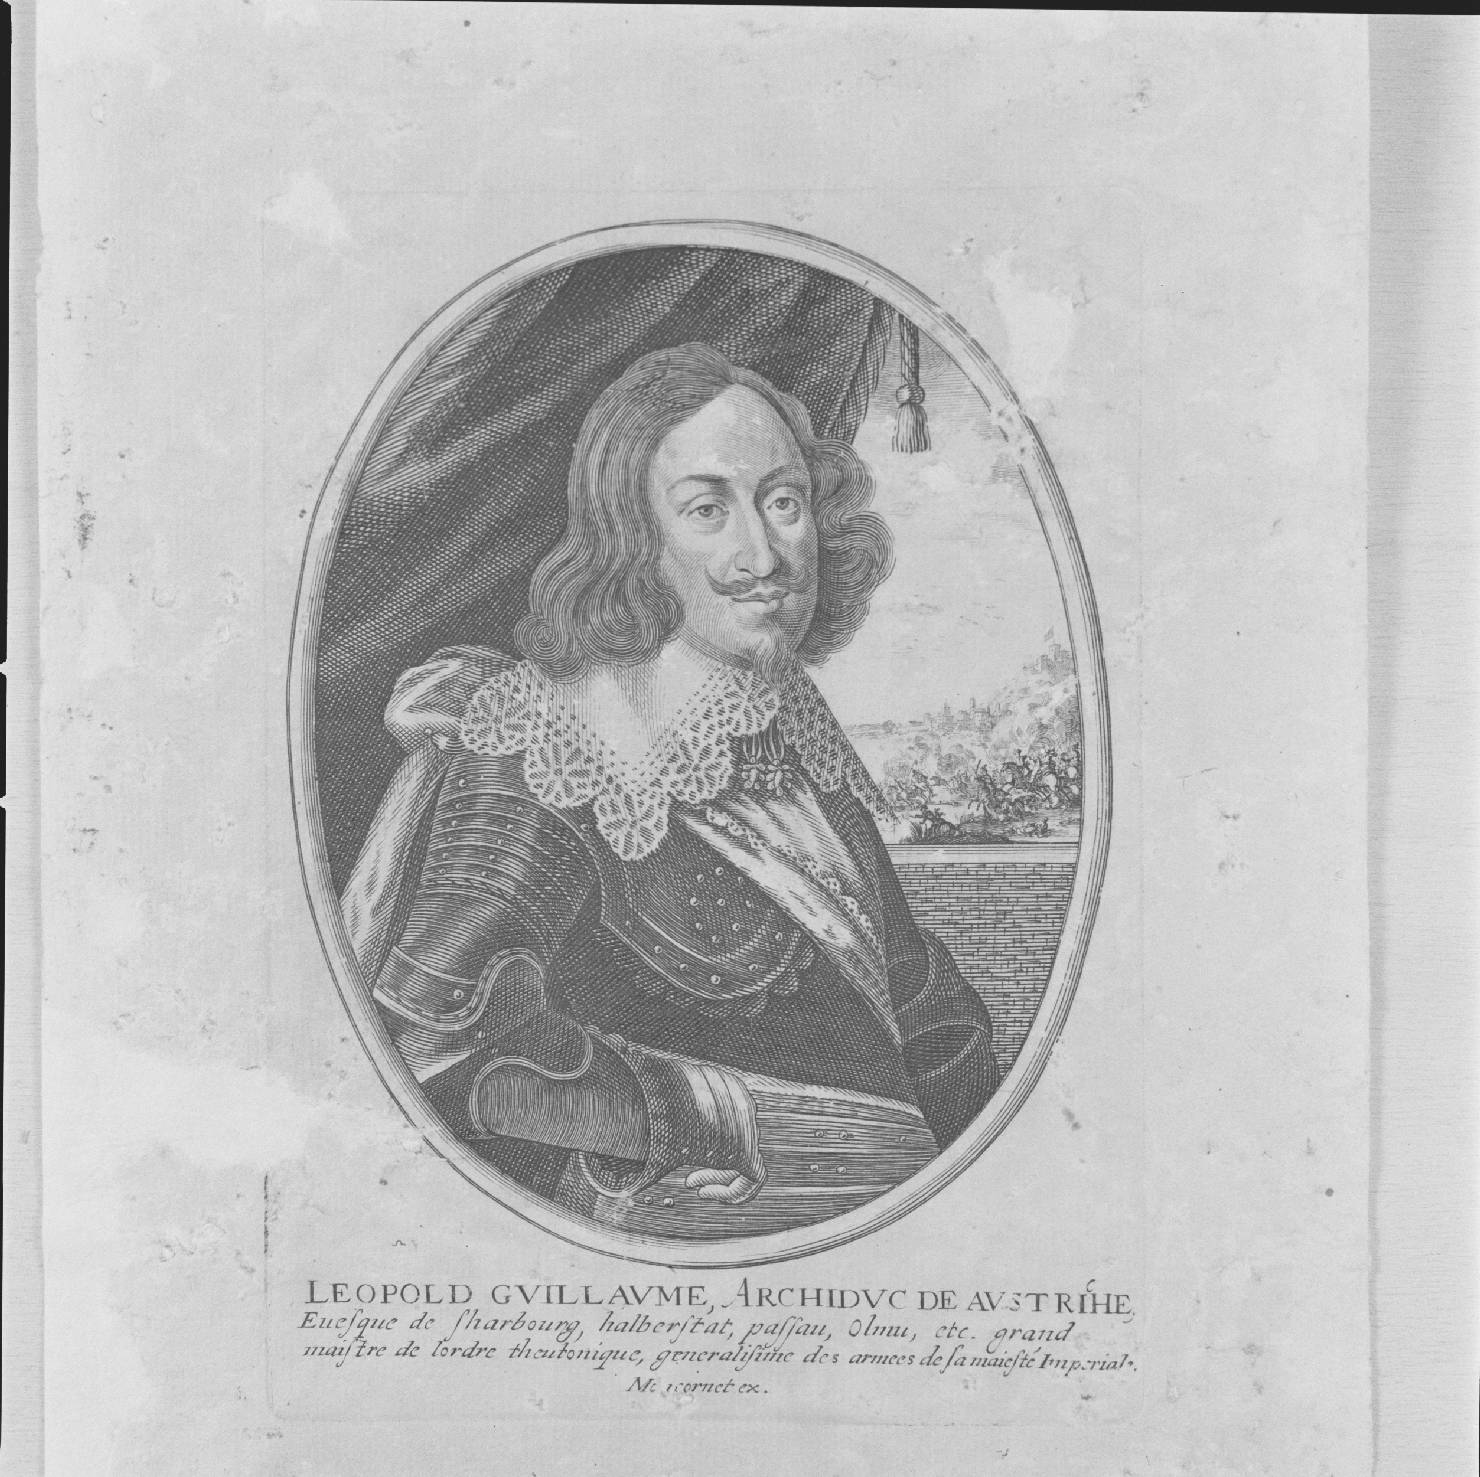 ritratto di Leopoldo Guglielmo arciduca d'Austria (stampa smarginata, serie) - ambito francese, ambito francese, ambito francese (sec. XVII)